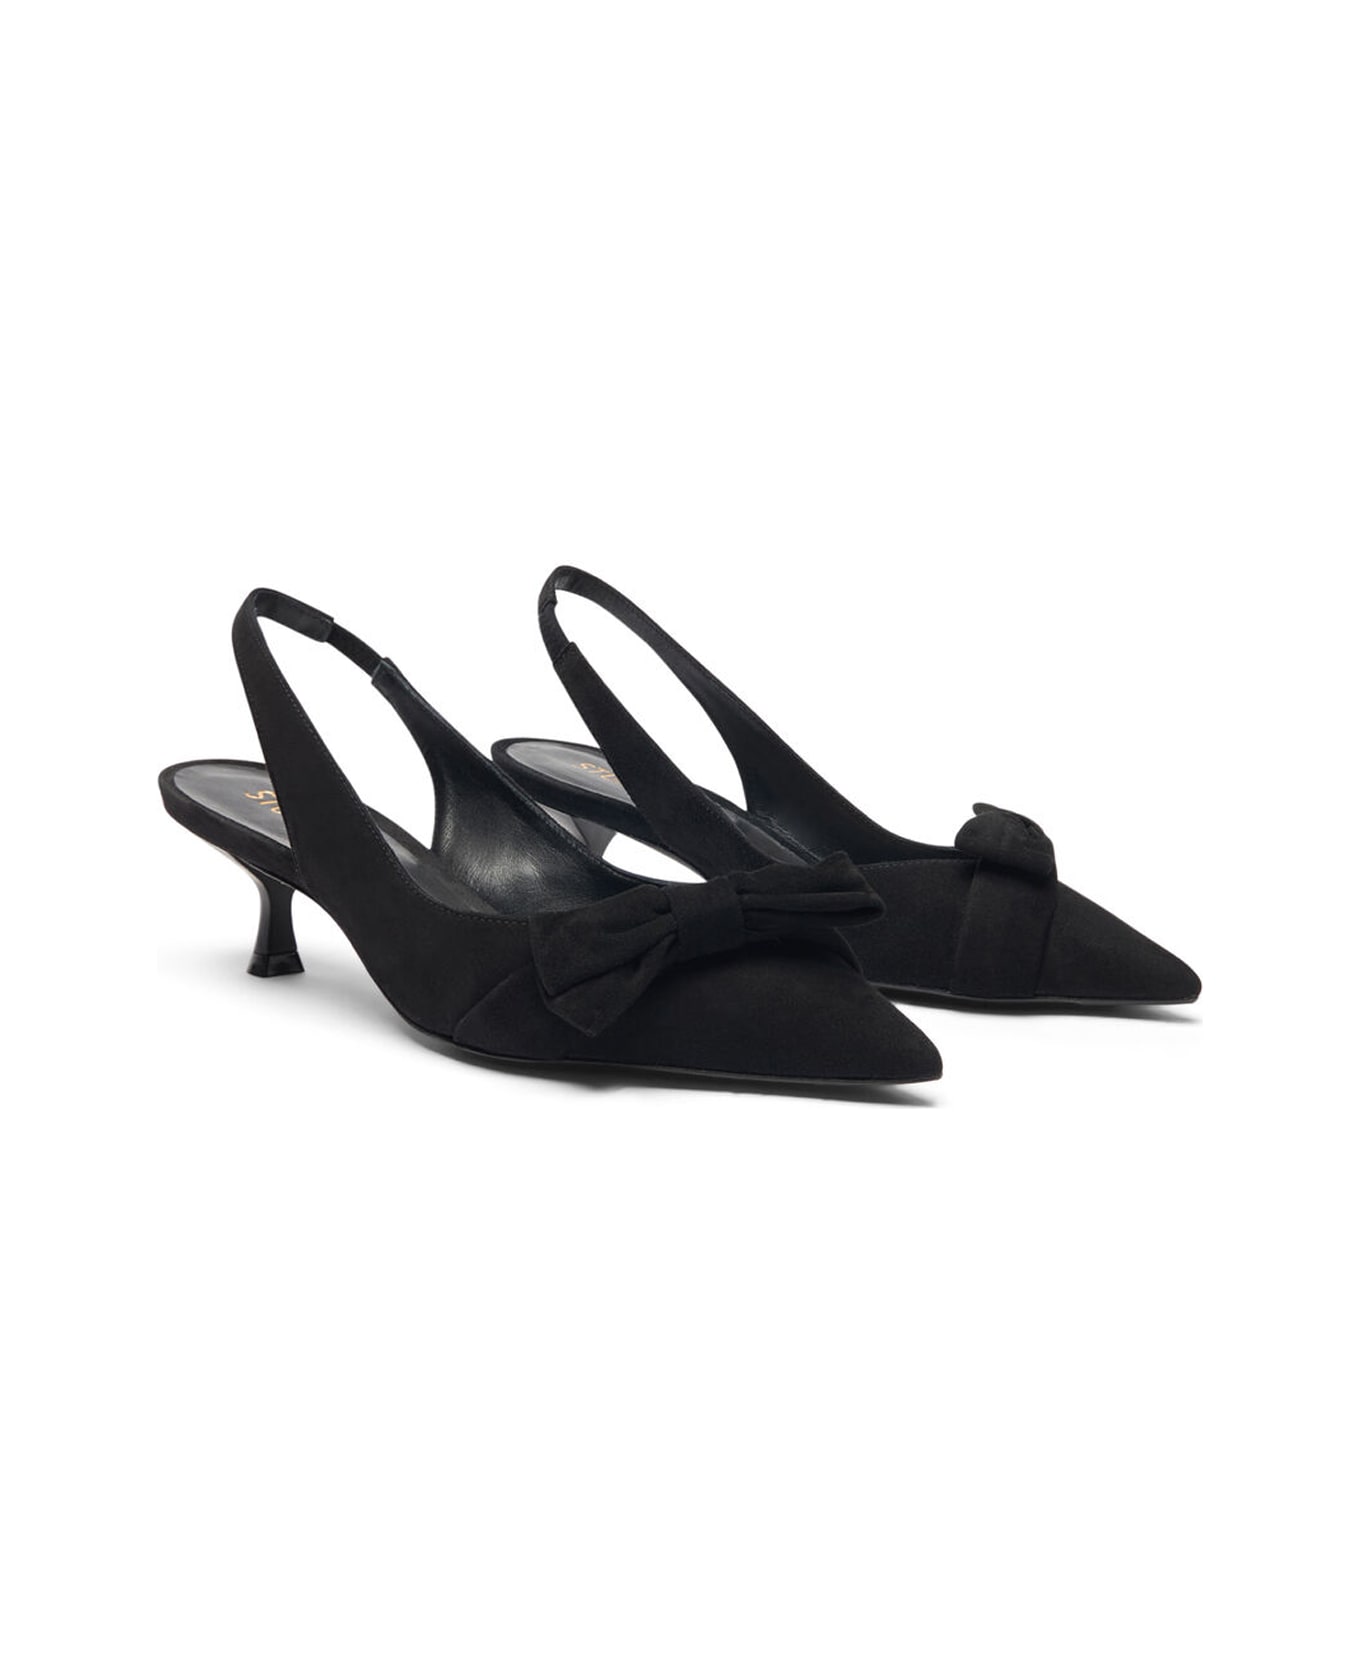 Stuart Weitzman Shoes With Heels - Black